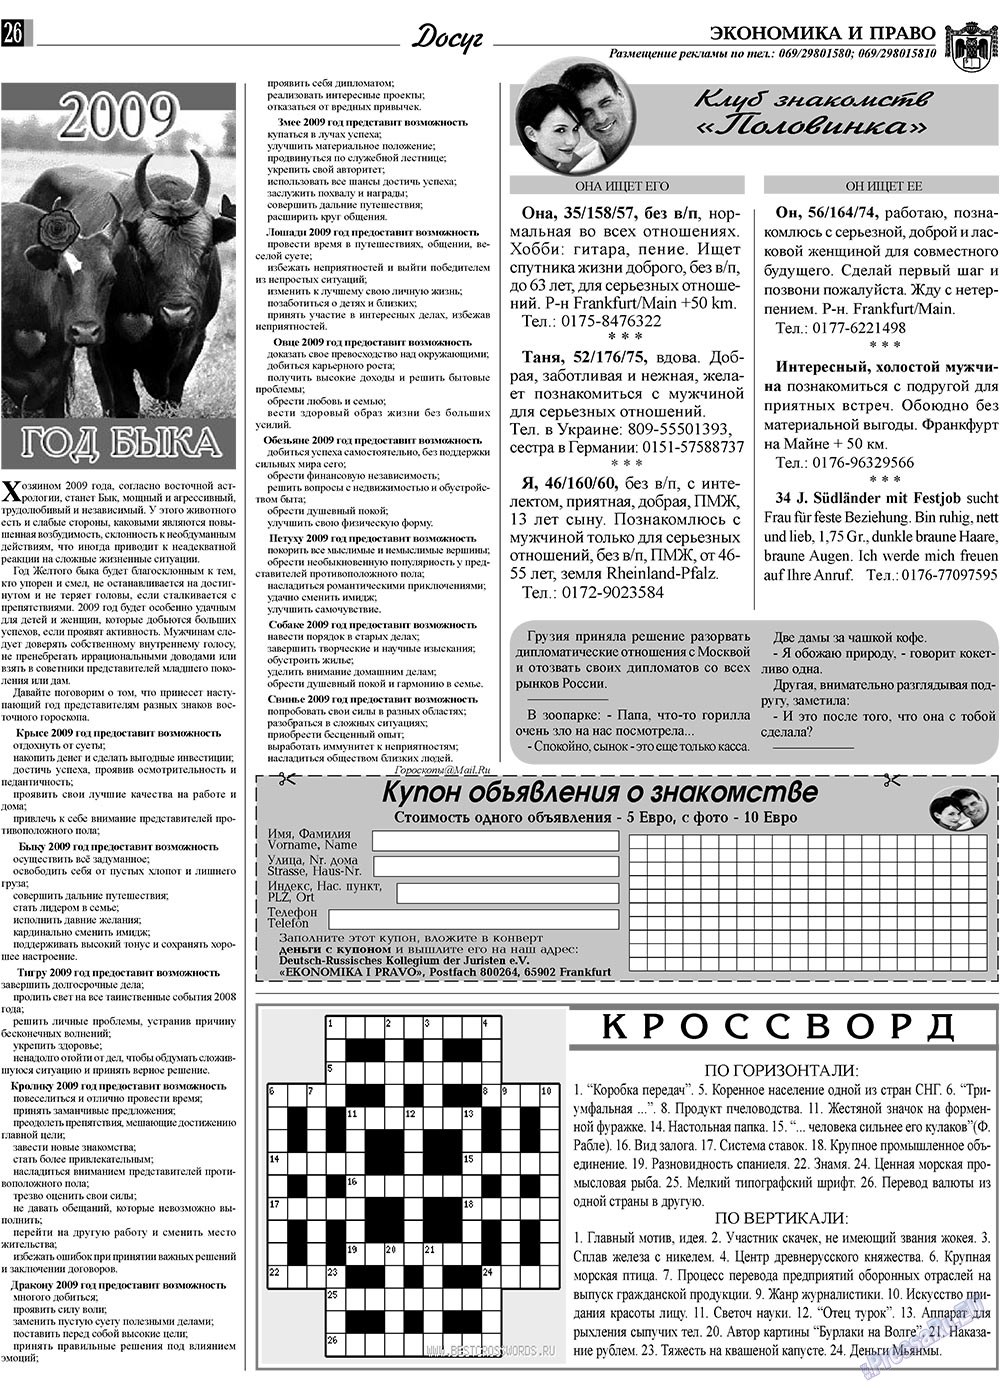 Экономика и право, газета. 2009 №1 стр.26